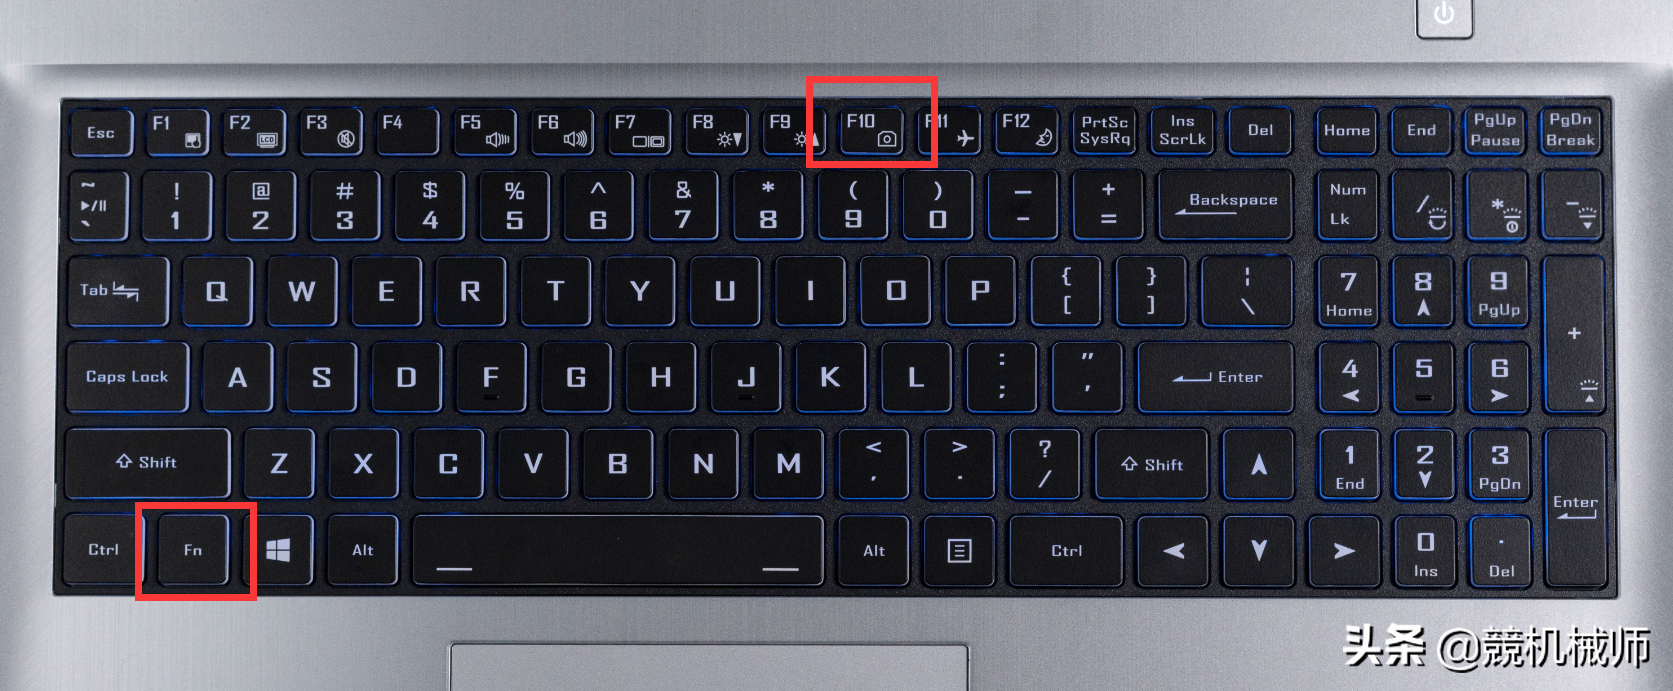 《搞机作战室》常见的Windows笔记本电脑摄像头功能修复方式汇总